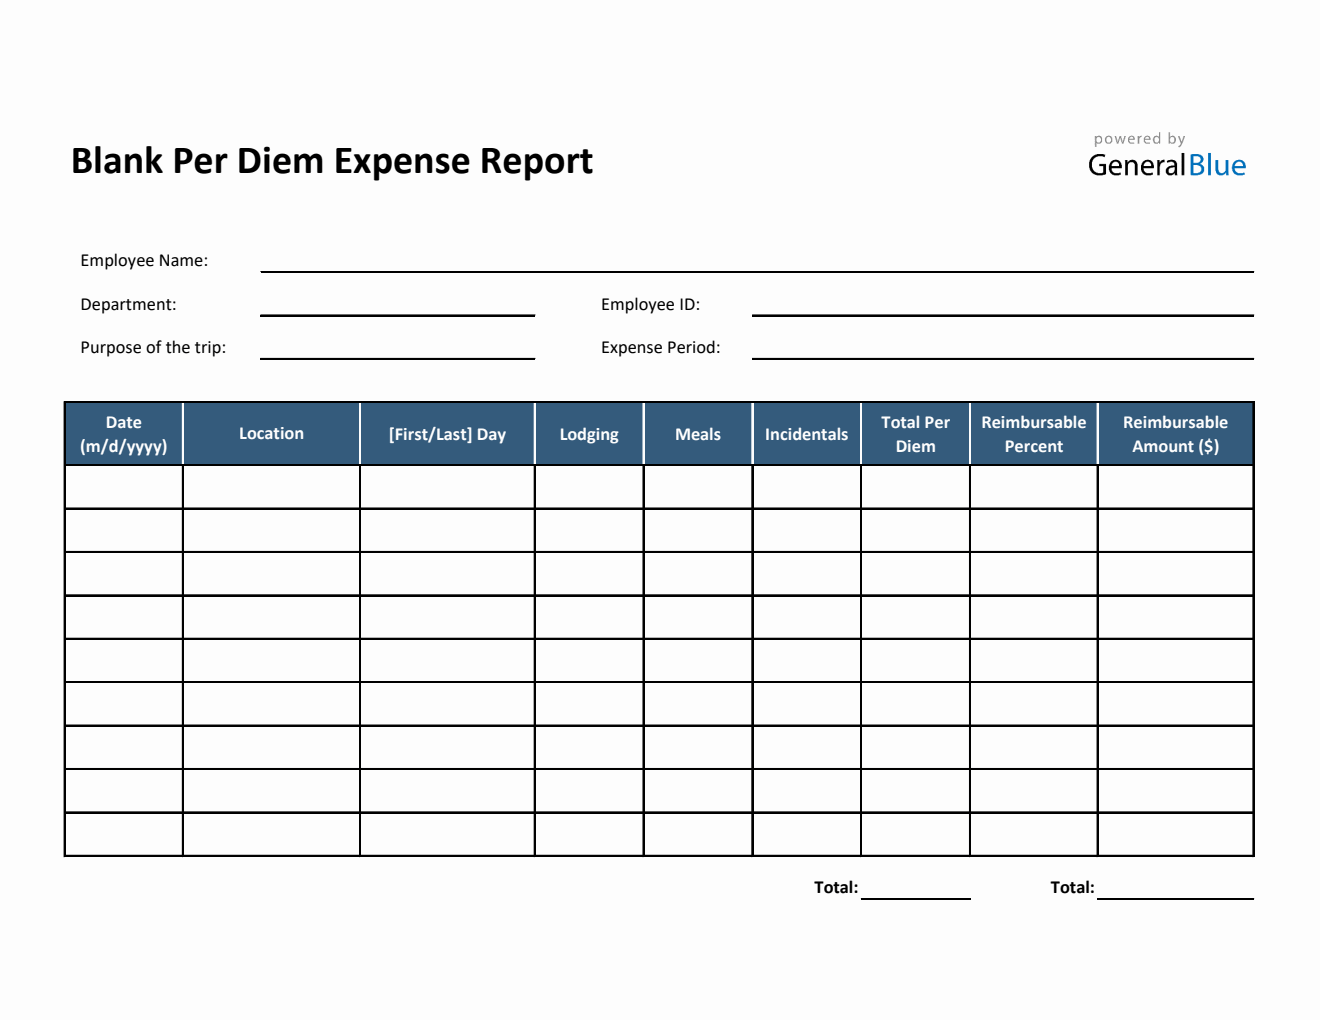 Blank Per Diem Expense Report Template in Excel (Simple)